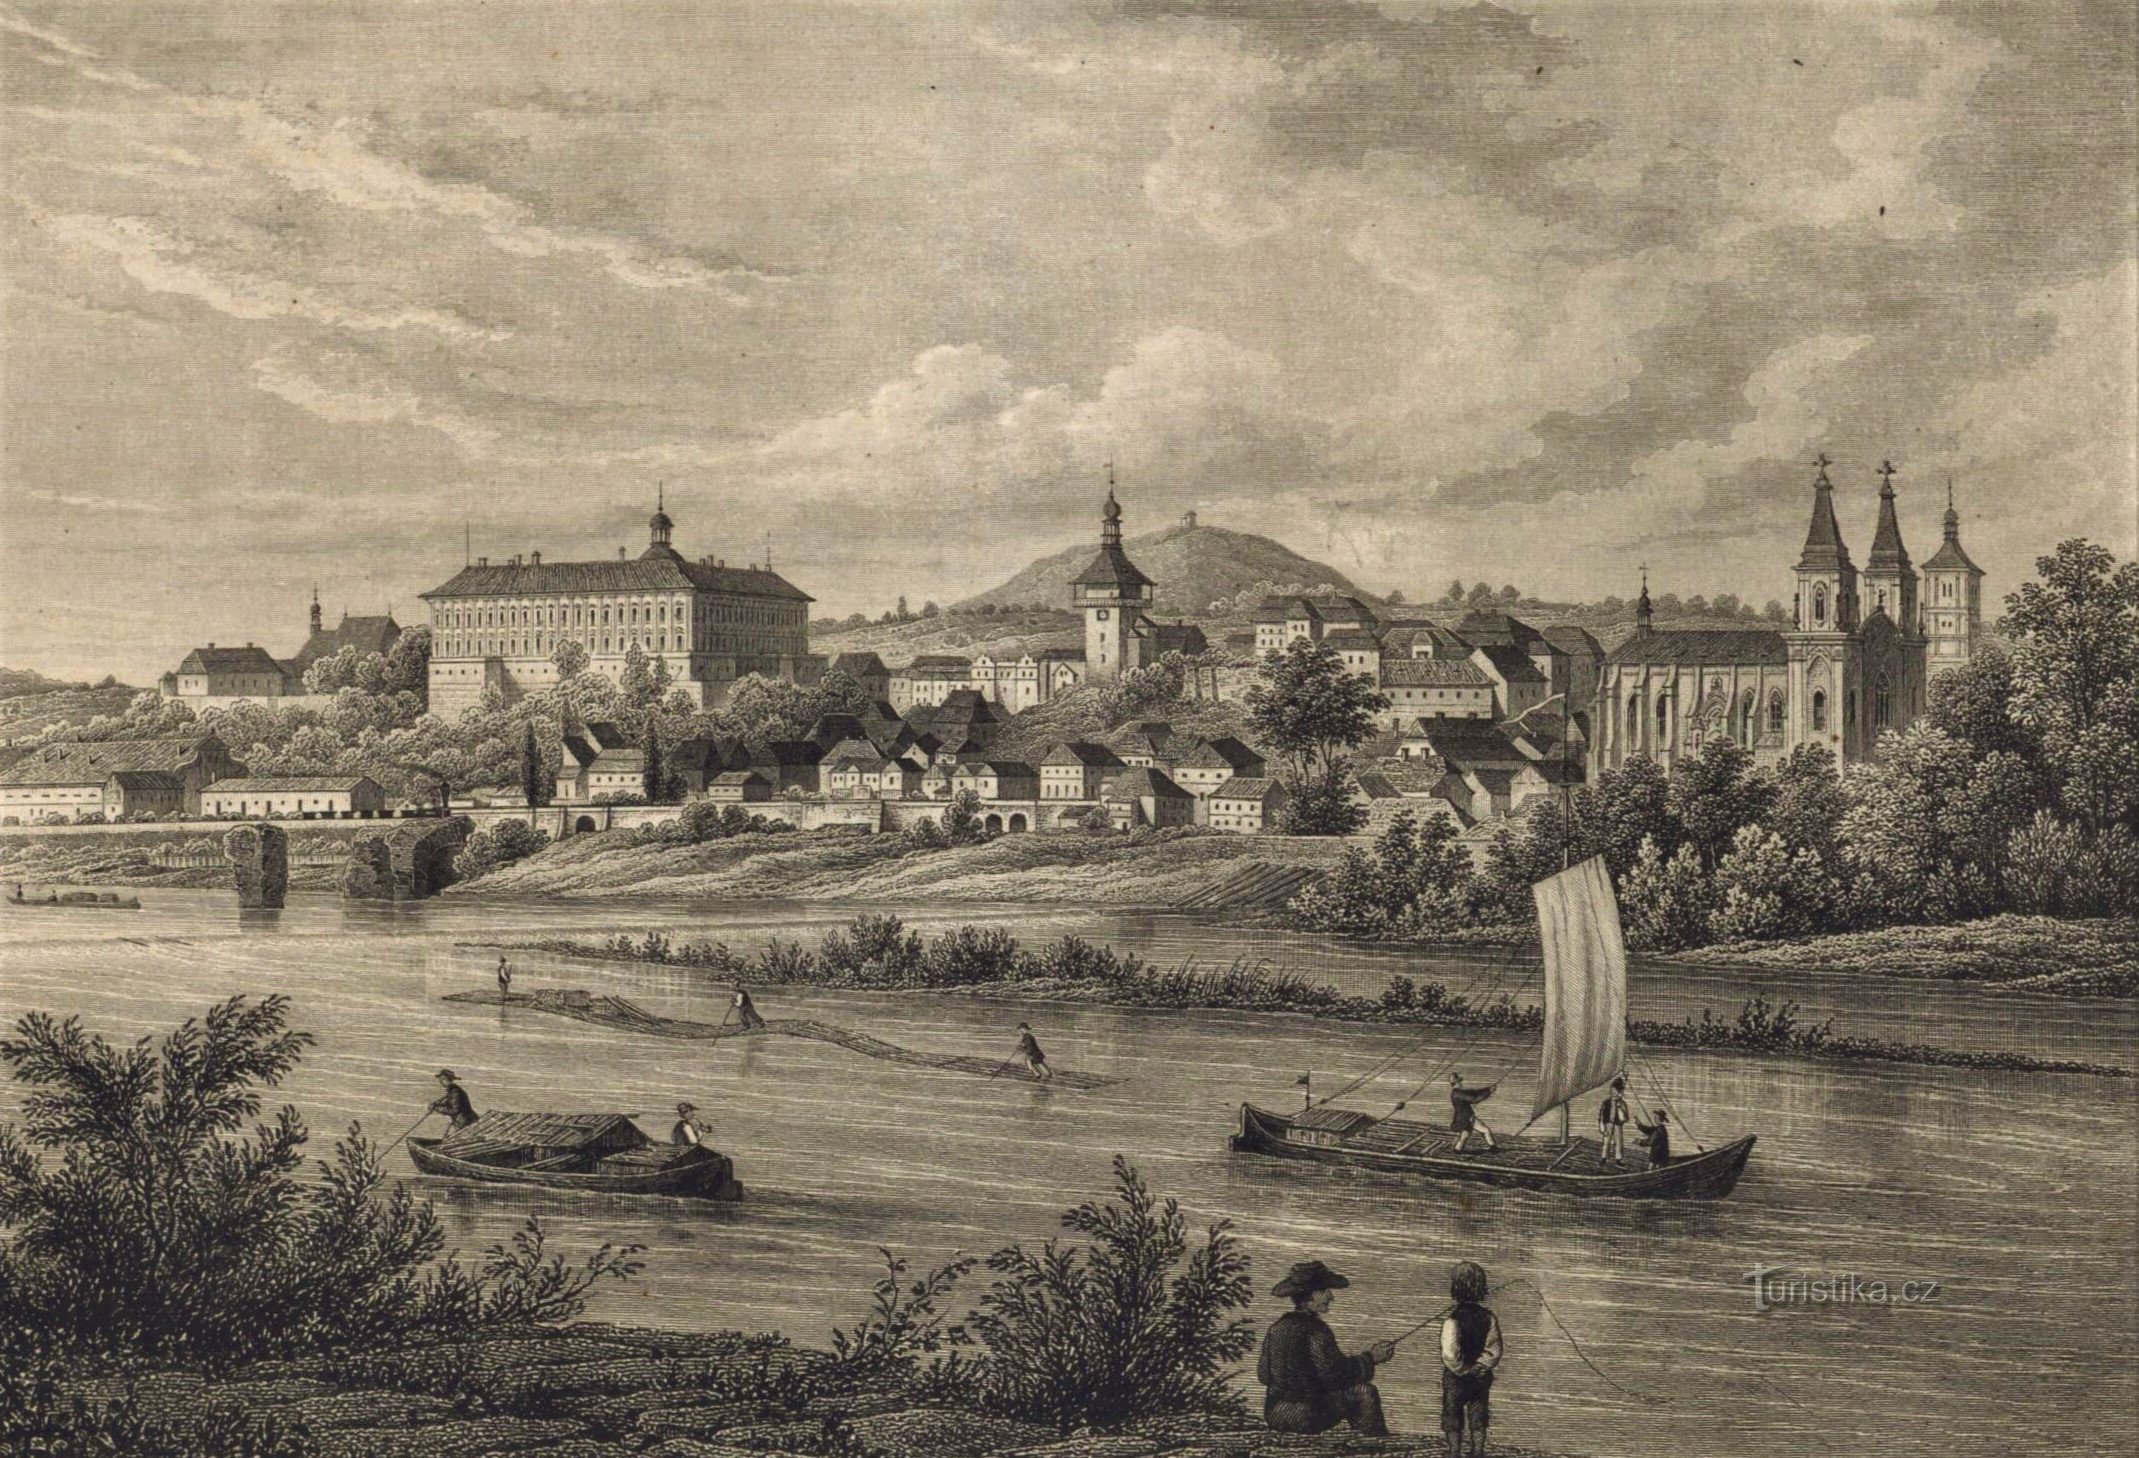 Roudnice nad Labem kilátása 1850 után (a sörfőzde a kastély alatt, a bal szélen található)